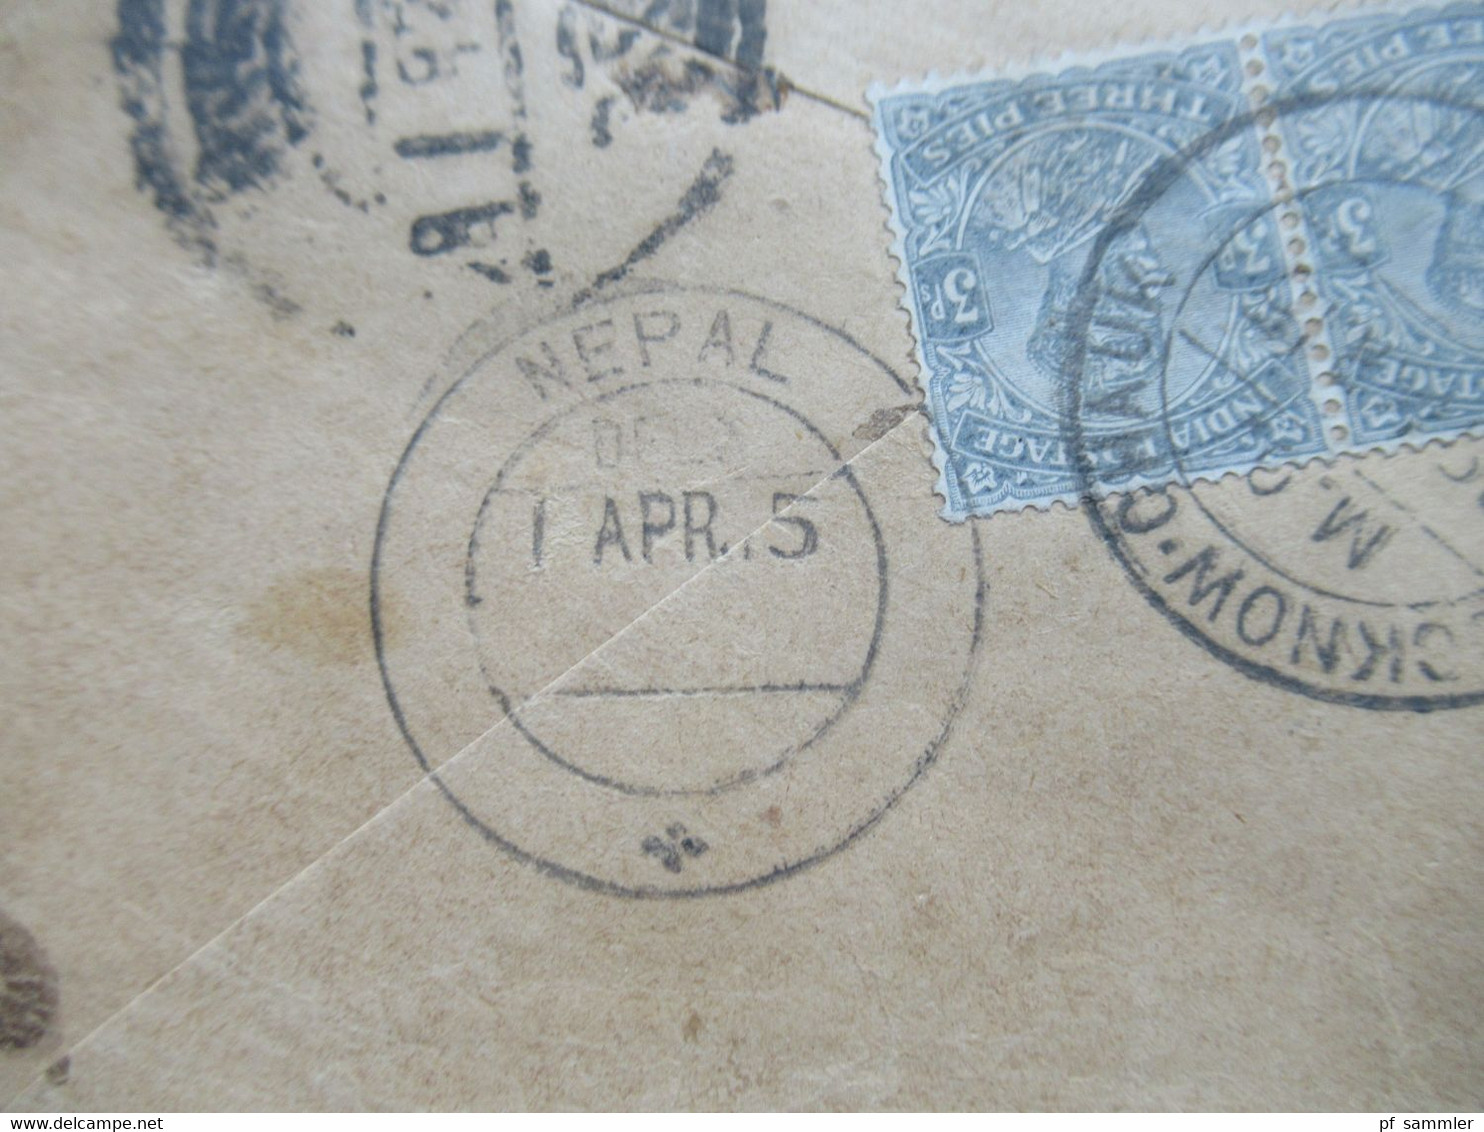 Indien / Nepal Umschlag Nach Nhubohal Nepal 1915 Ank. Stempel Nepal Und 2 Weitere Stempel - Népal